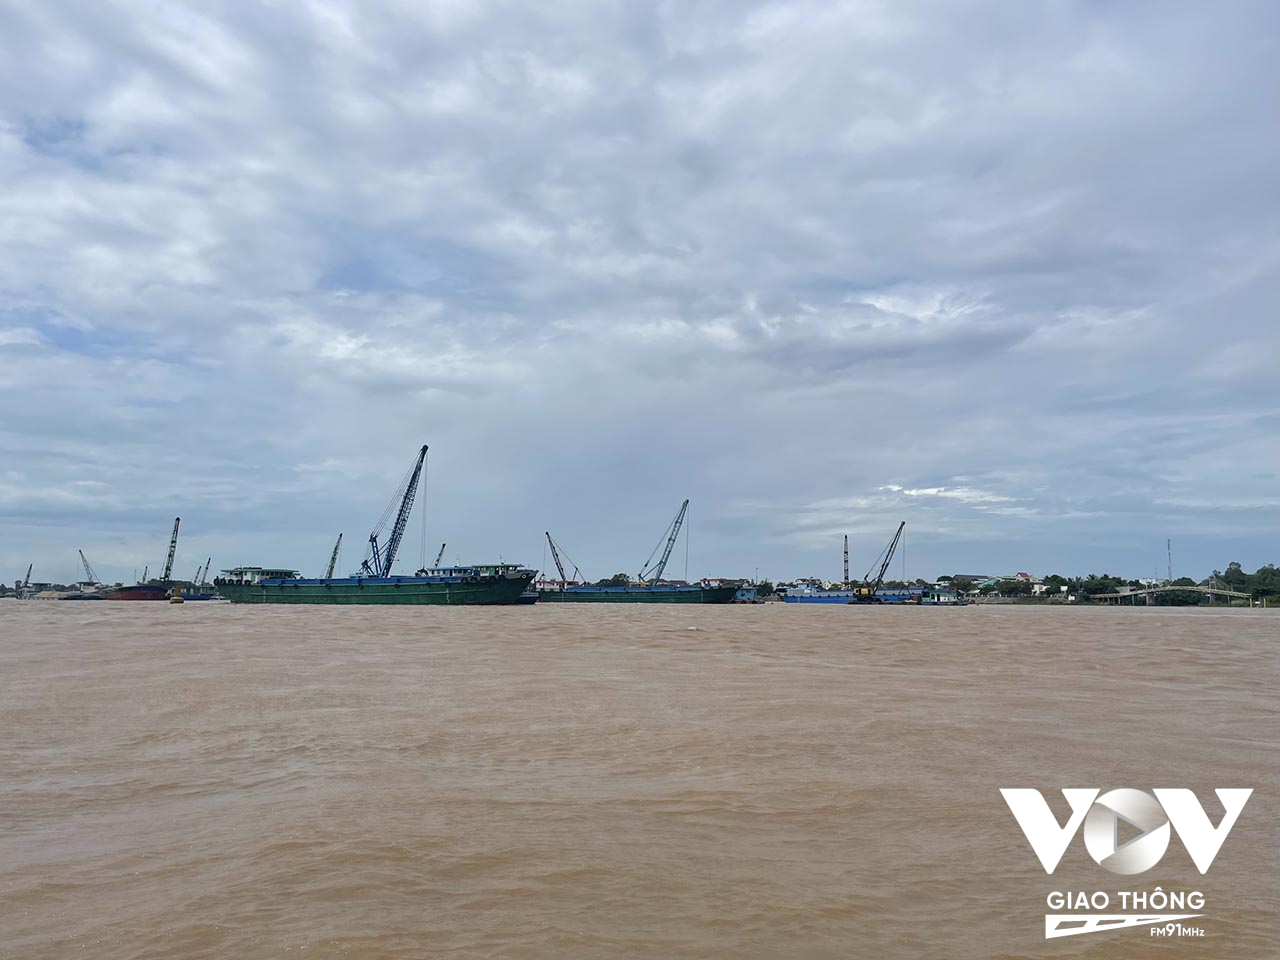 Khan hiếm cát, nhiều doanh nghiệp đã phải nhập cát từ Campuchia thông qua cửa khẩu Vĩnh Xương ( Tân Châu- An Giang).